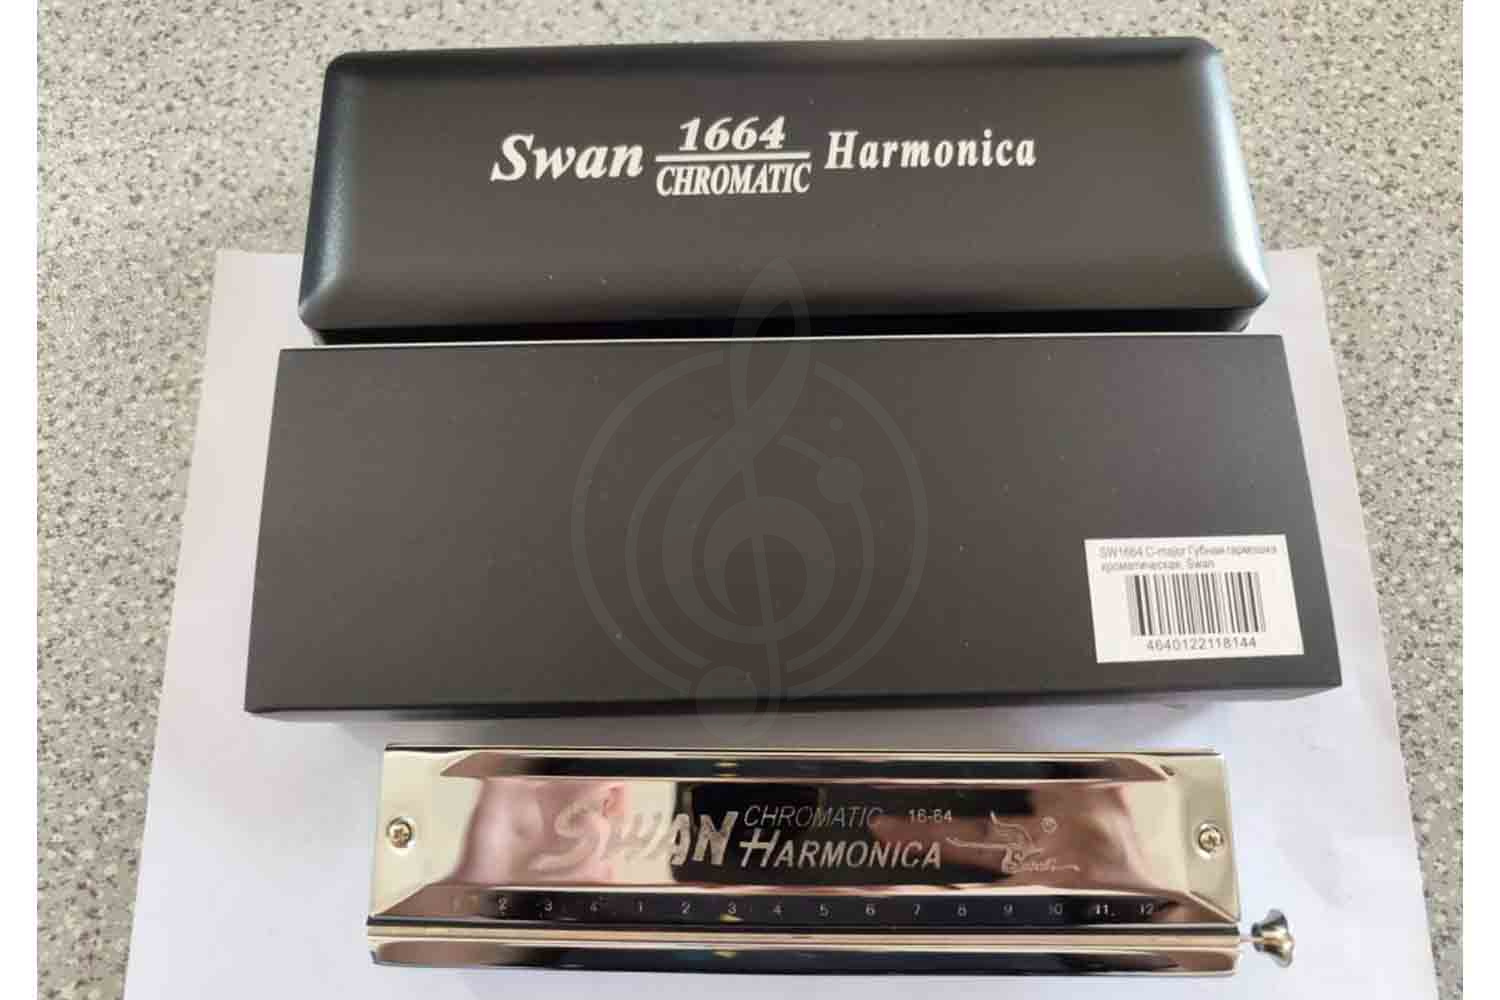 Хроматическая губная гармошка Swan SW1664 C-major - Губная гармошка хроматическая, Swan SW1664 C-major в магазине DominantaMusic - фото 2